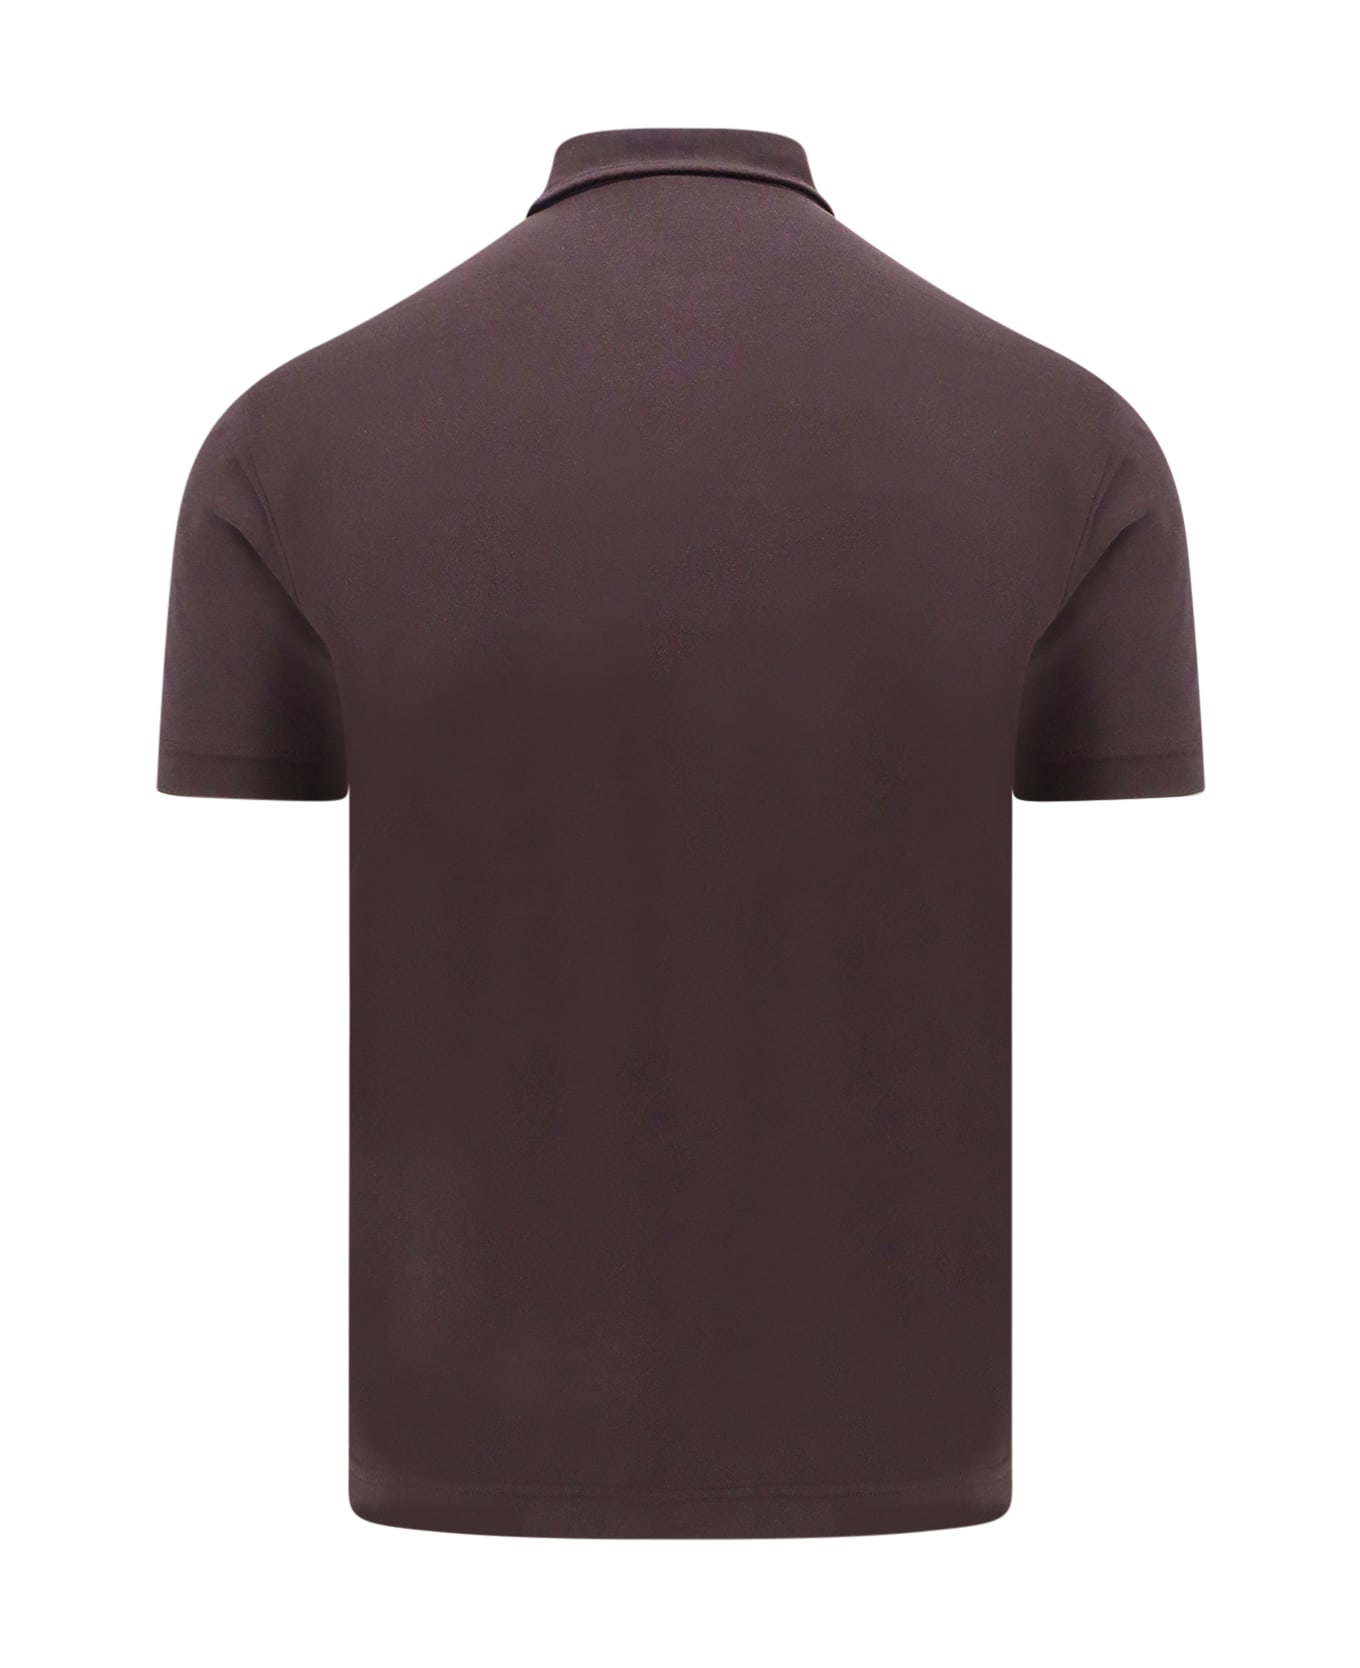 Zanone Polo Shirt - Brown